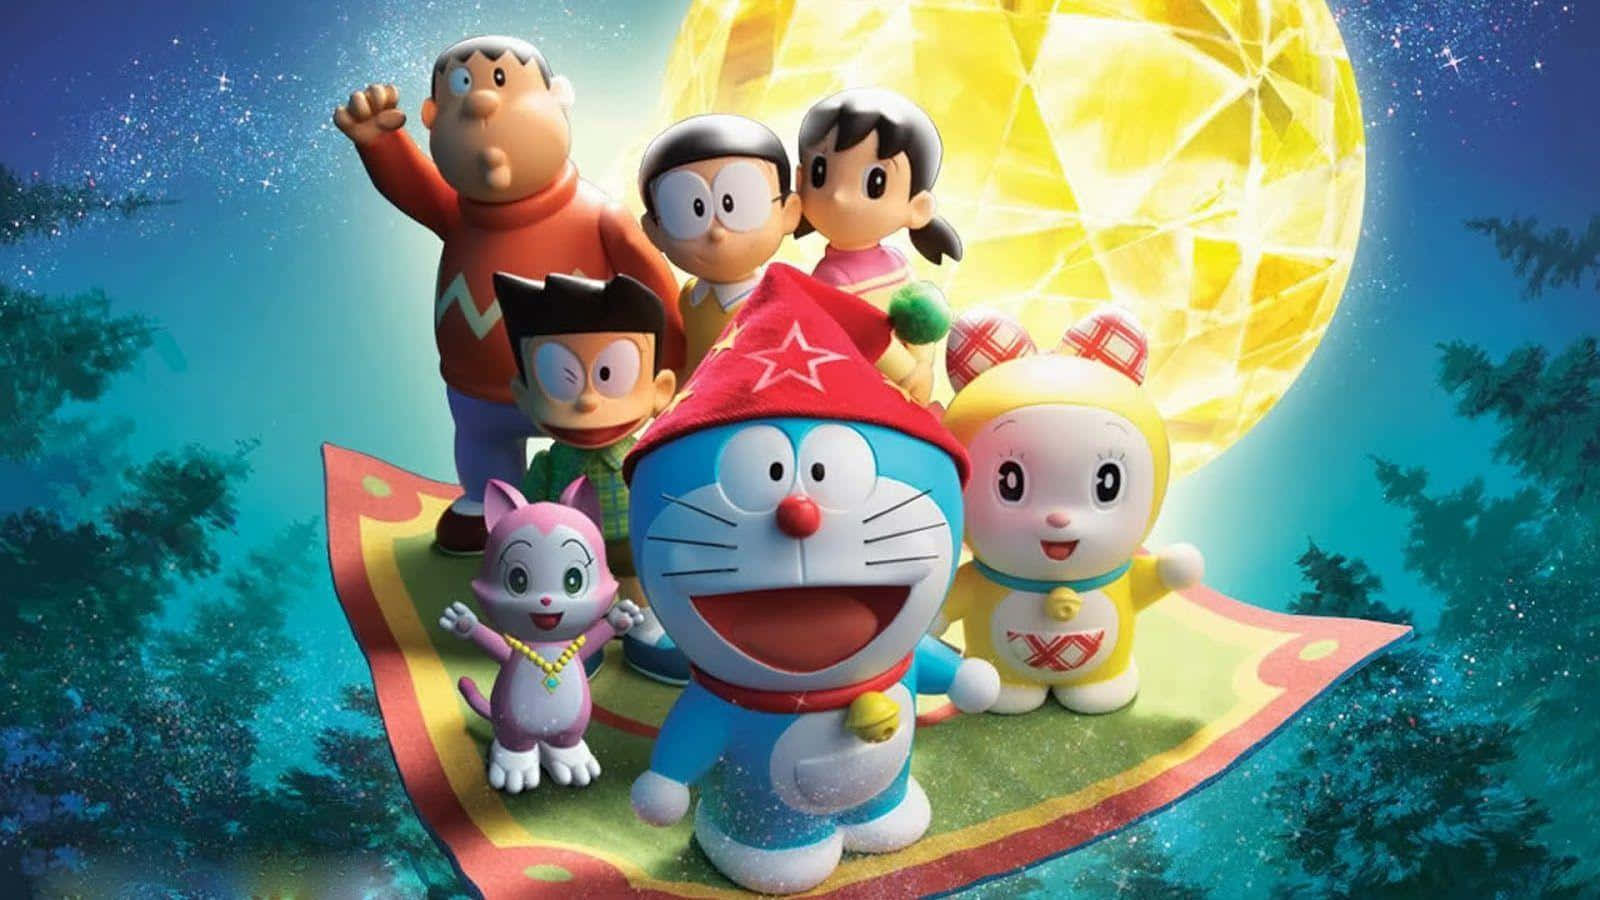 Doraemontrae Lecciones De Vida A Través De Su Creatividad De Corazón Cálido.